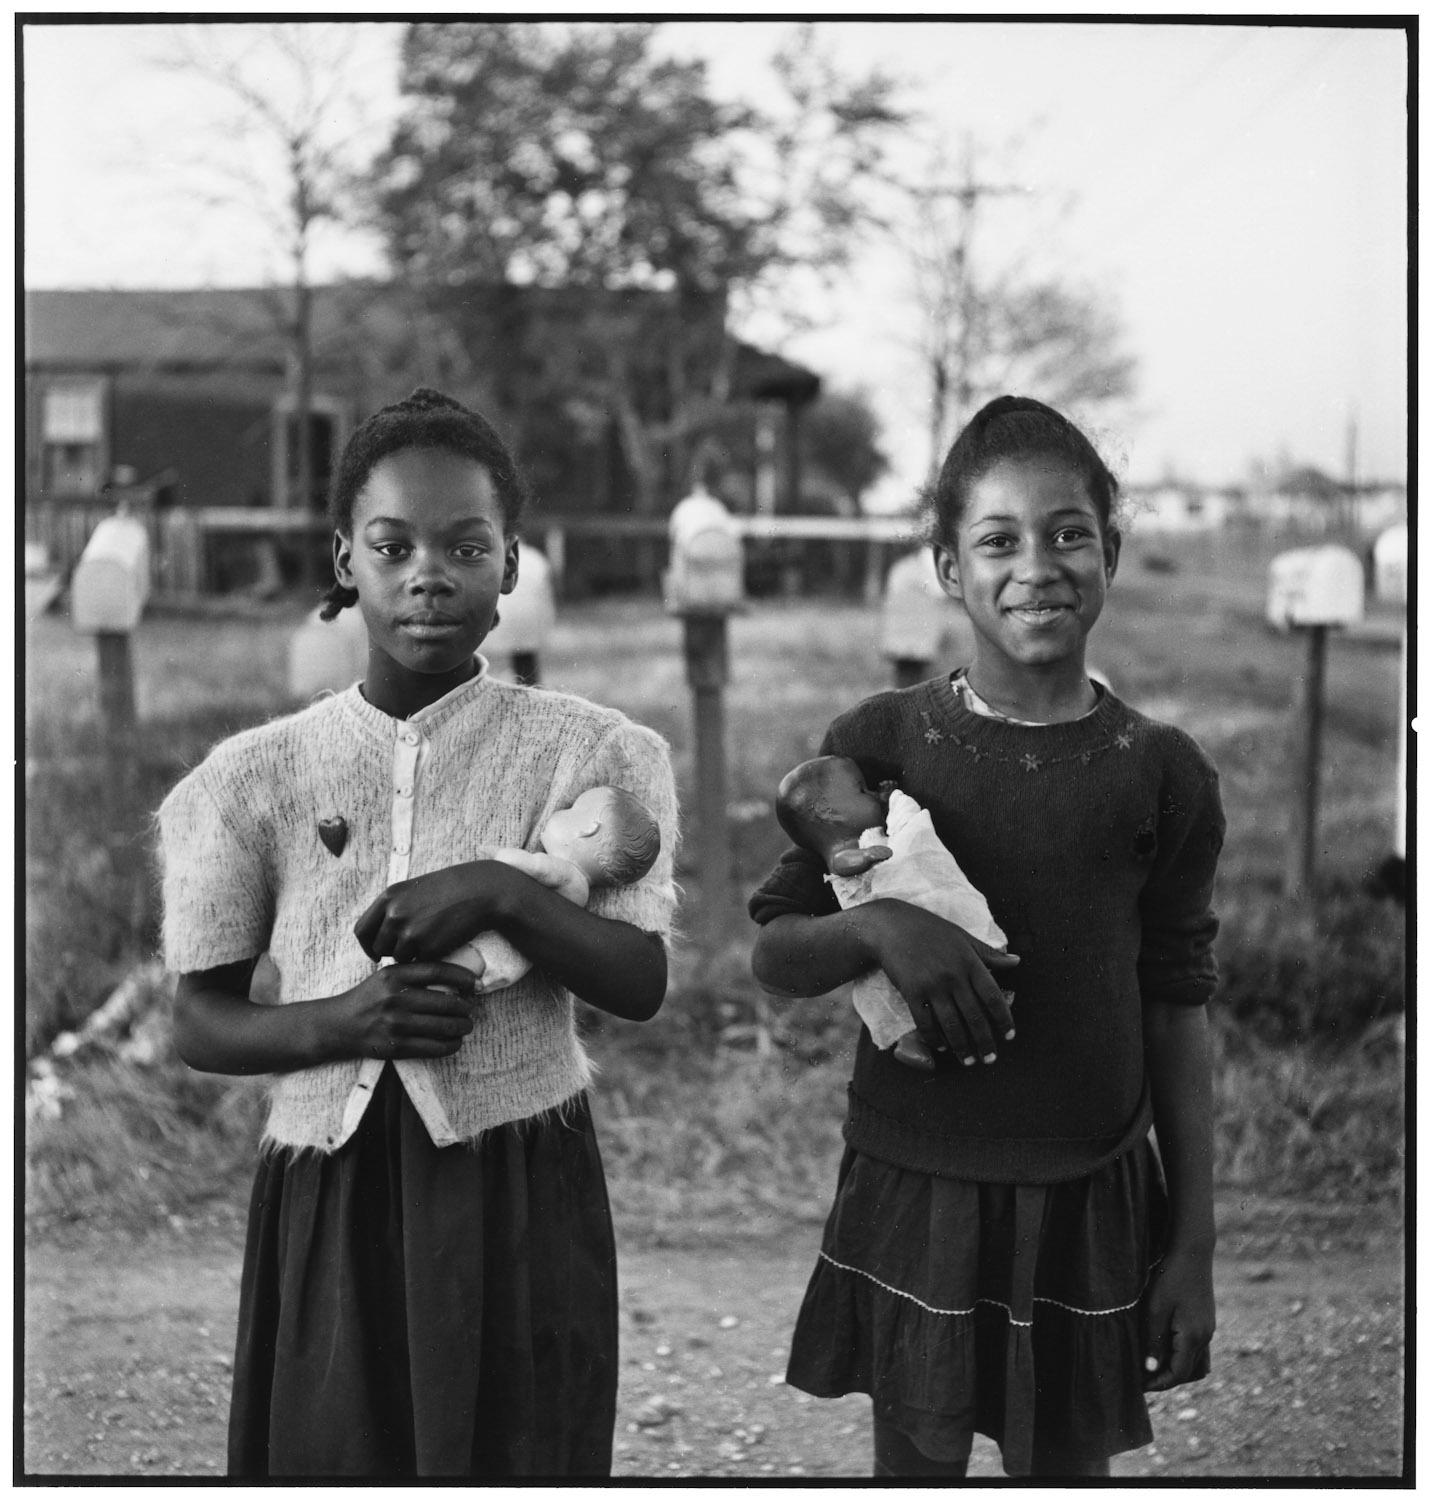 États-Unis, Nouvelle-Orléans, Louisiane, 1947 - Elliott Erwitt (Photographie en noir et blanc)
Signé, inscrit avec le titre et daté sur l'étiquette de l'artiste qui l'accompagne
Tirage à la gélatine argentique, imprimé ultérieurement

Disponible en